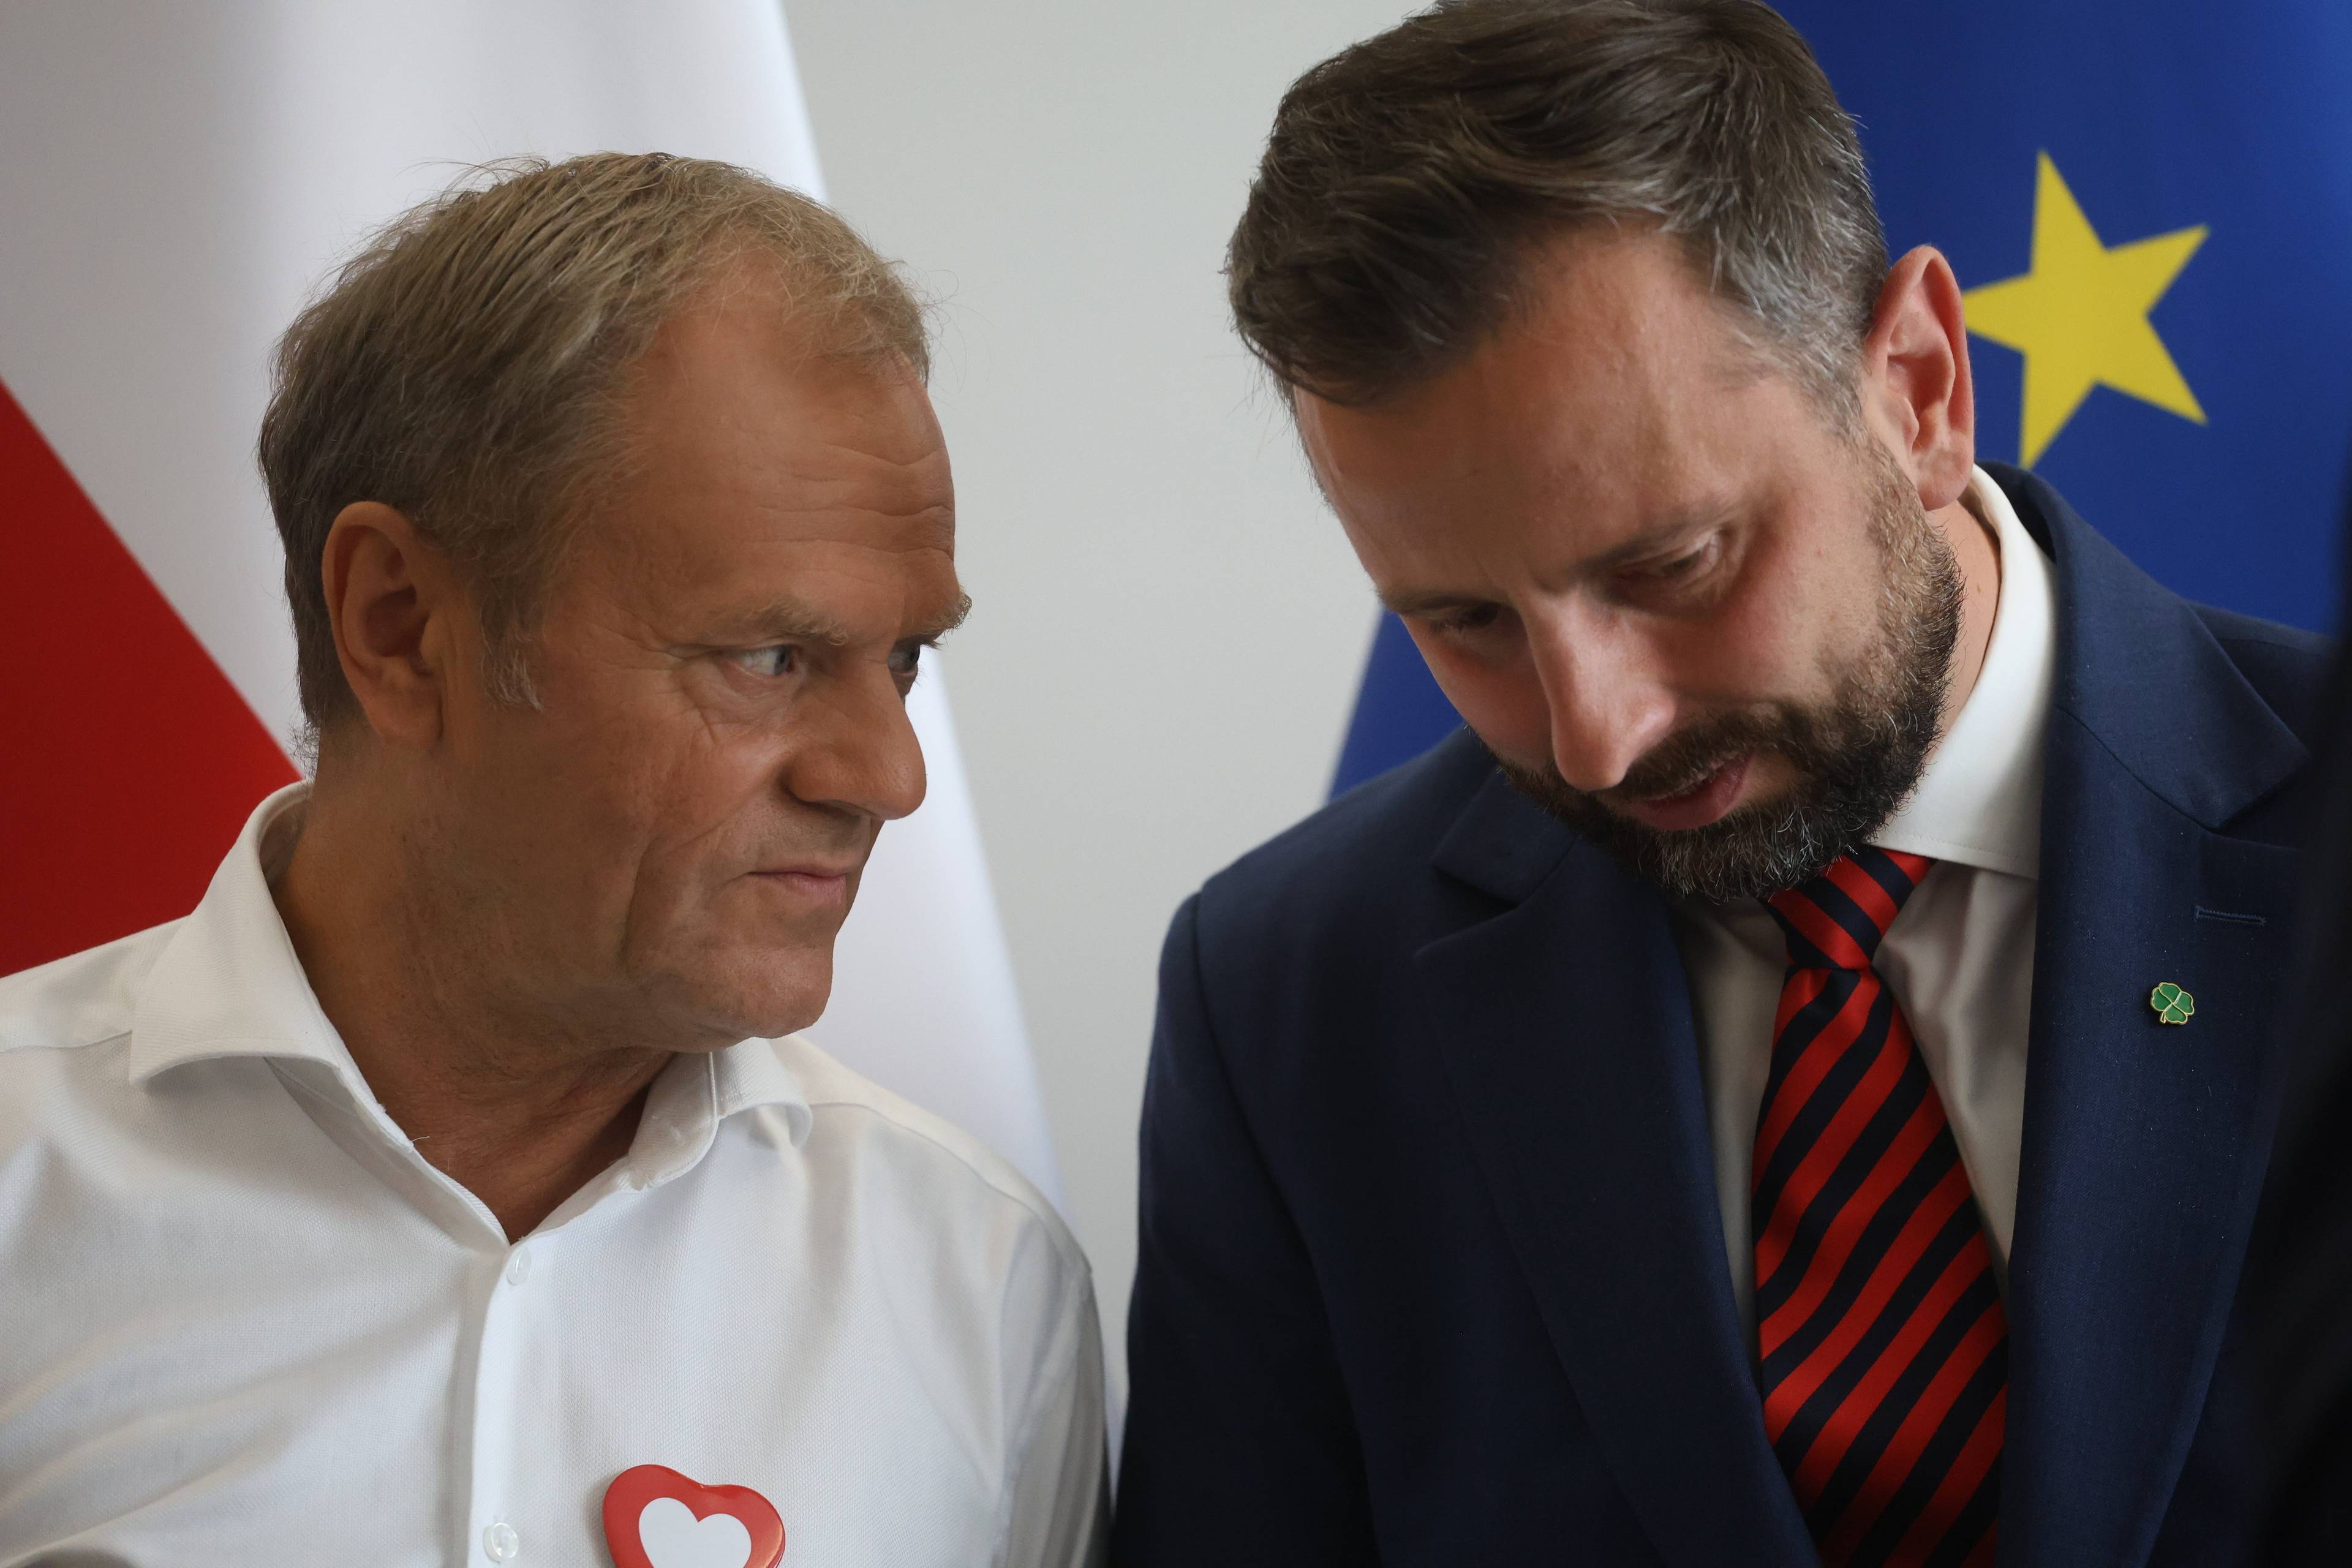 Władysław Kosiniak-Kamysz po lewej z pochyloną głową na tle flagi Unii Europejskiej słucha, co mówi do niego Donald Tusk na tle polskiej flagi